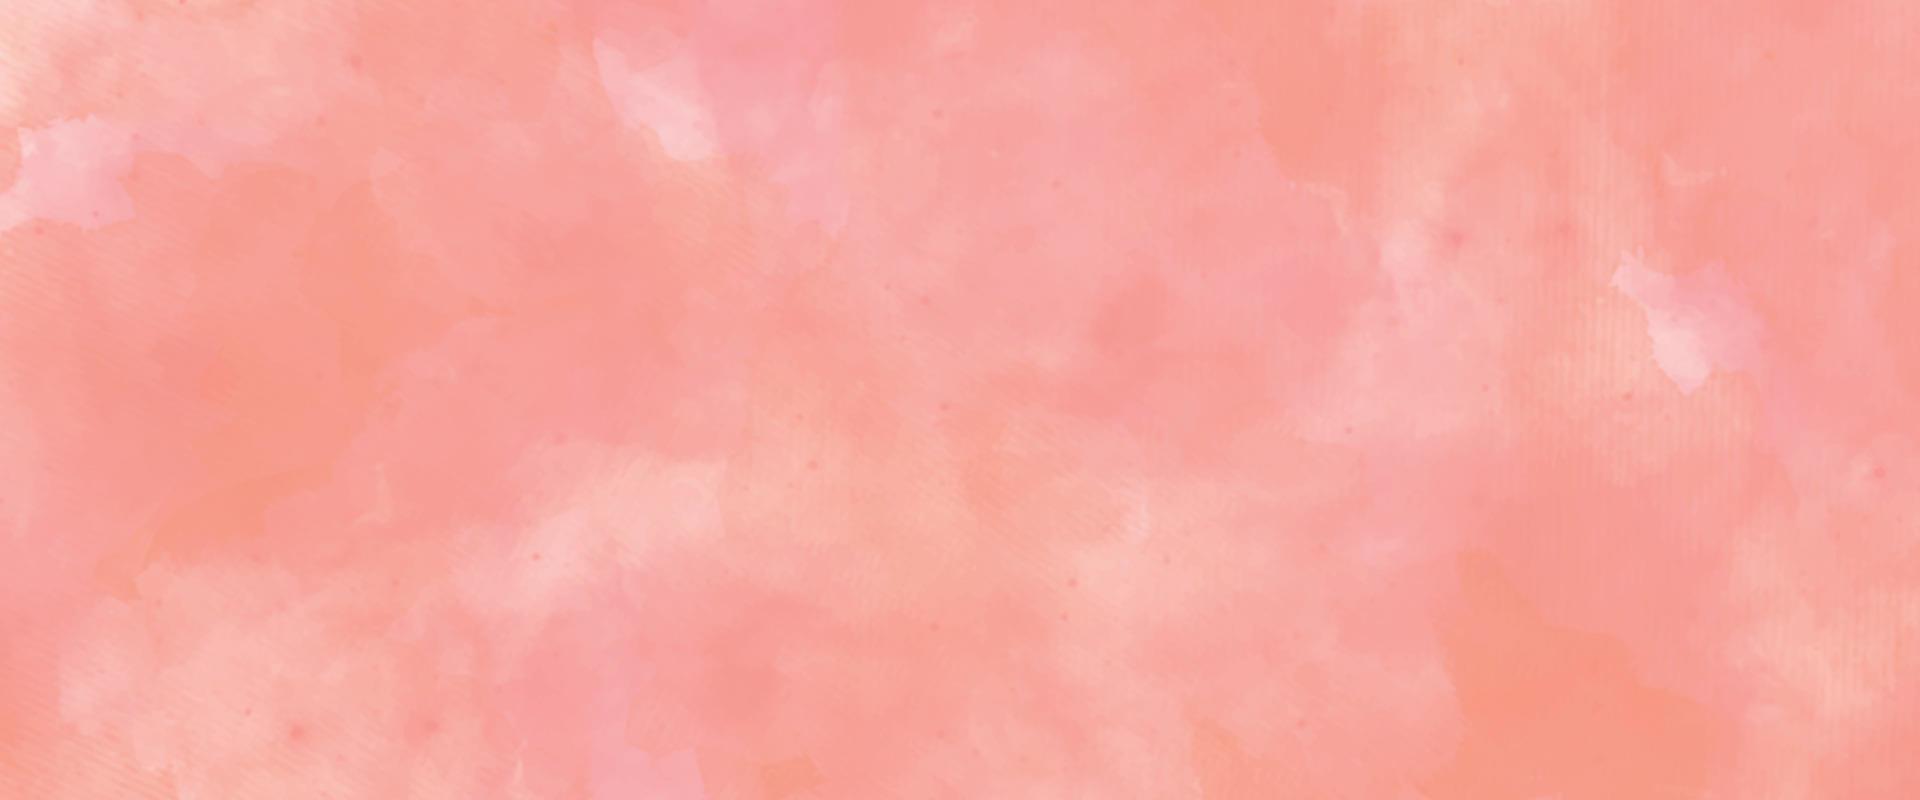 rosa sfondo con spazio. fantasia liscio leggero rosa acquerello carta strutturato. morbido rosa acquerello sfondo per il tuo disegno, acquerello sfondo concetto, vettore. vettore